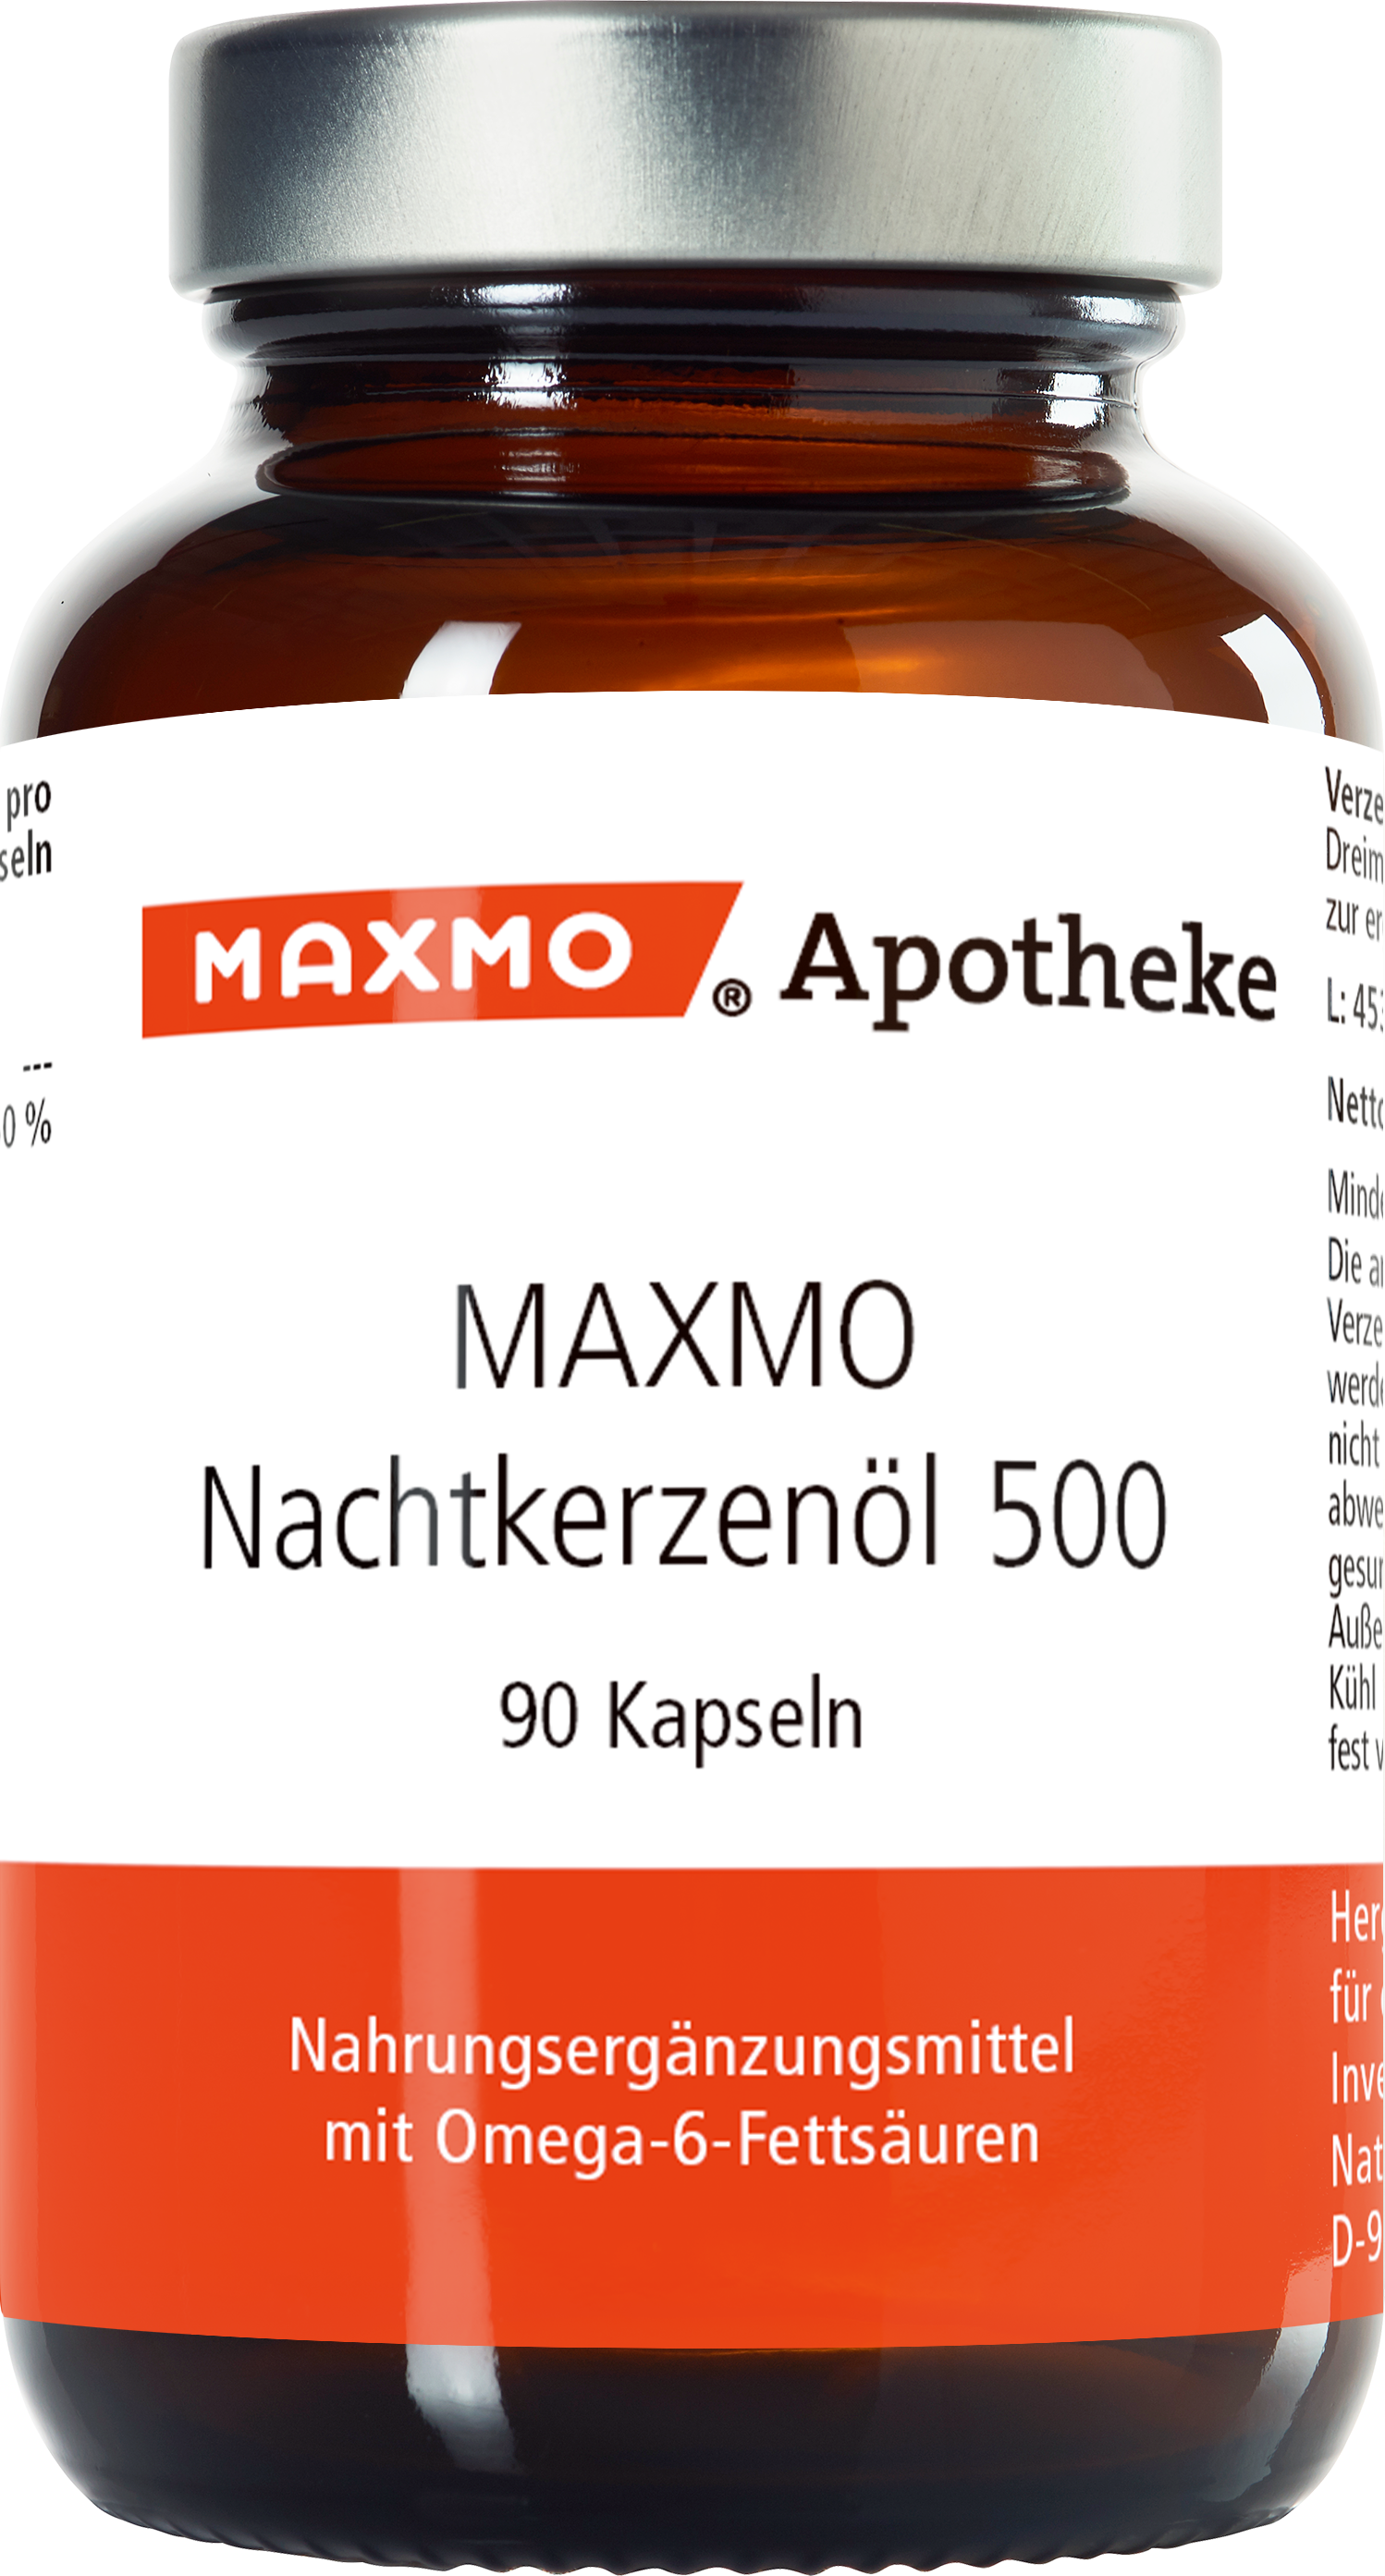 MAXMO Nachtkerzenöl 500 Kapseln